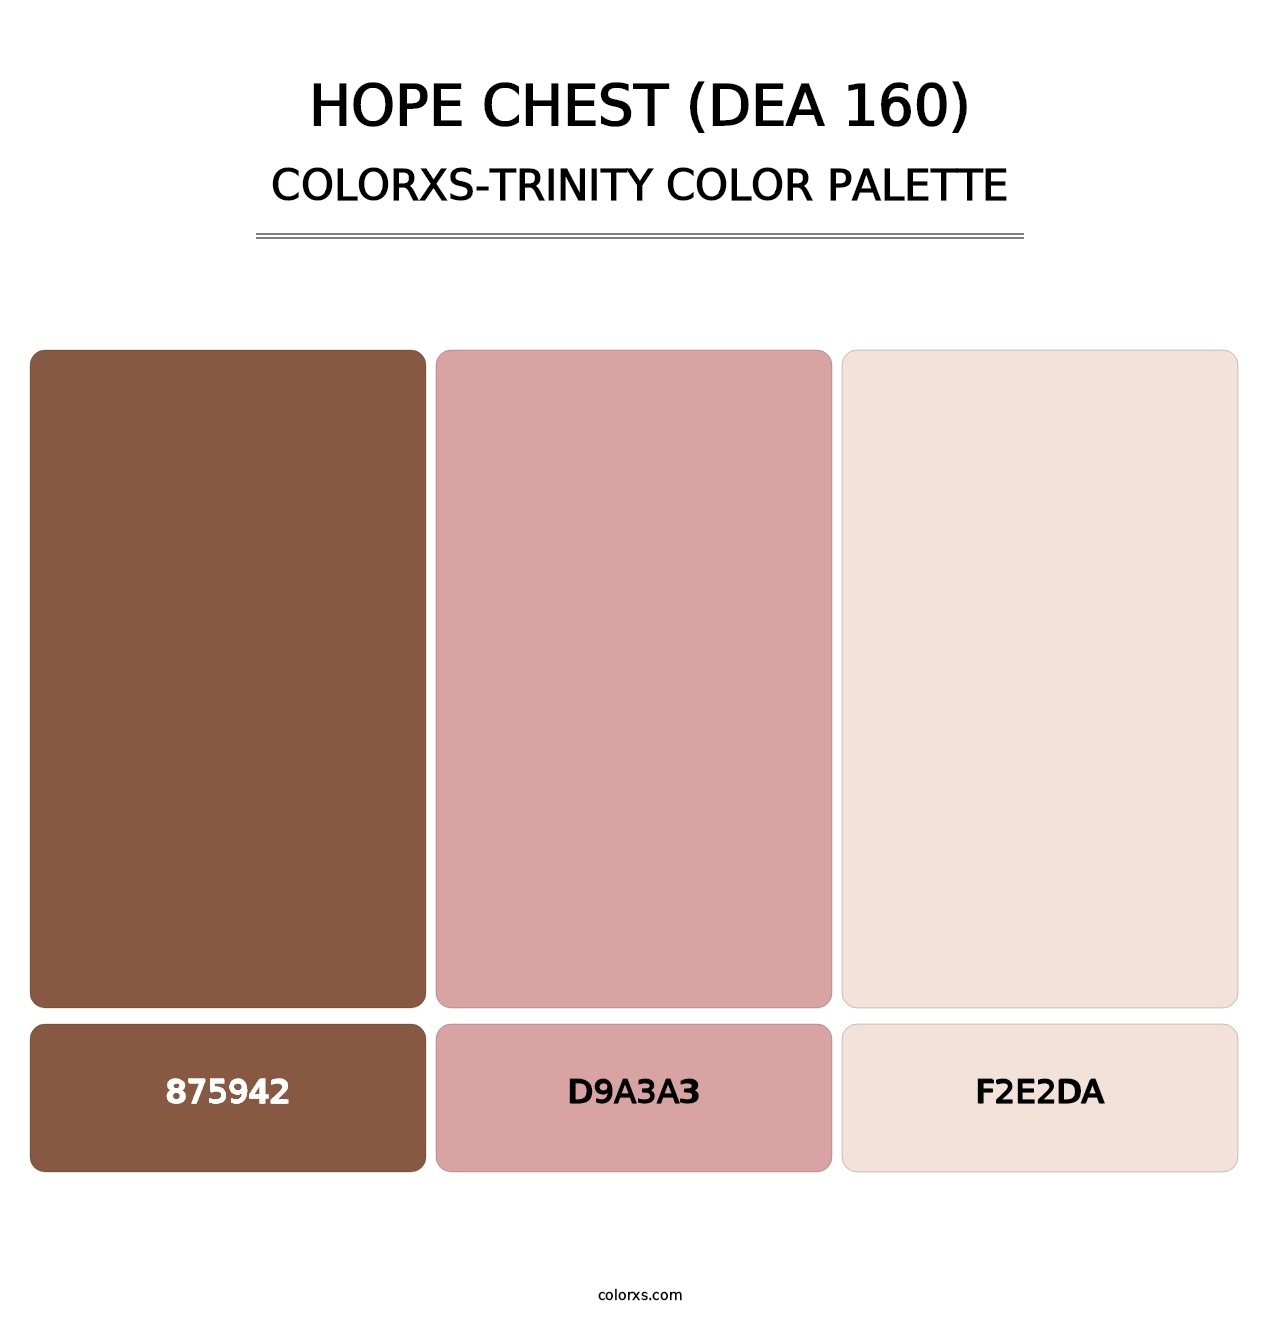 Hope Chest (DEA 160) - Colorxs Trinity Palette